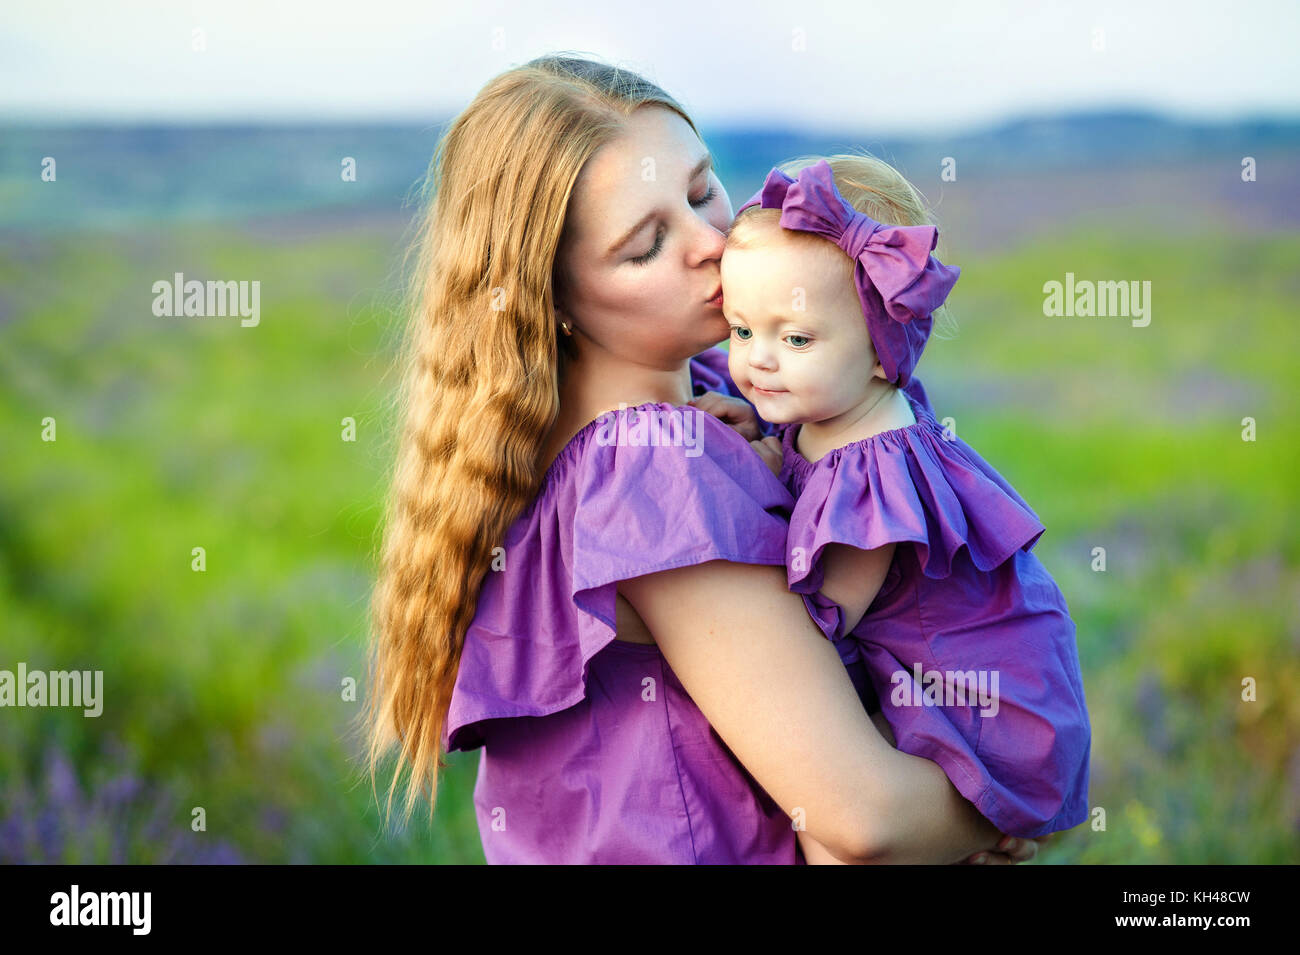 Madre e hija pequeña jugando juntos en un parque. madre besa suavemente a su pequeña hija Foto de stock